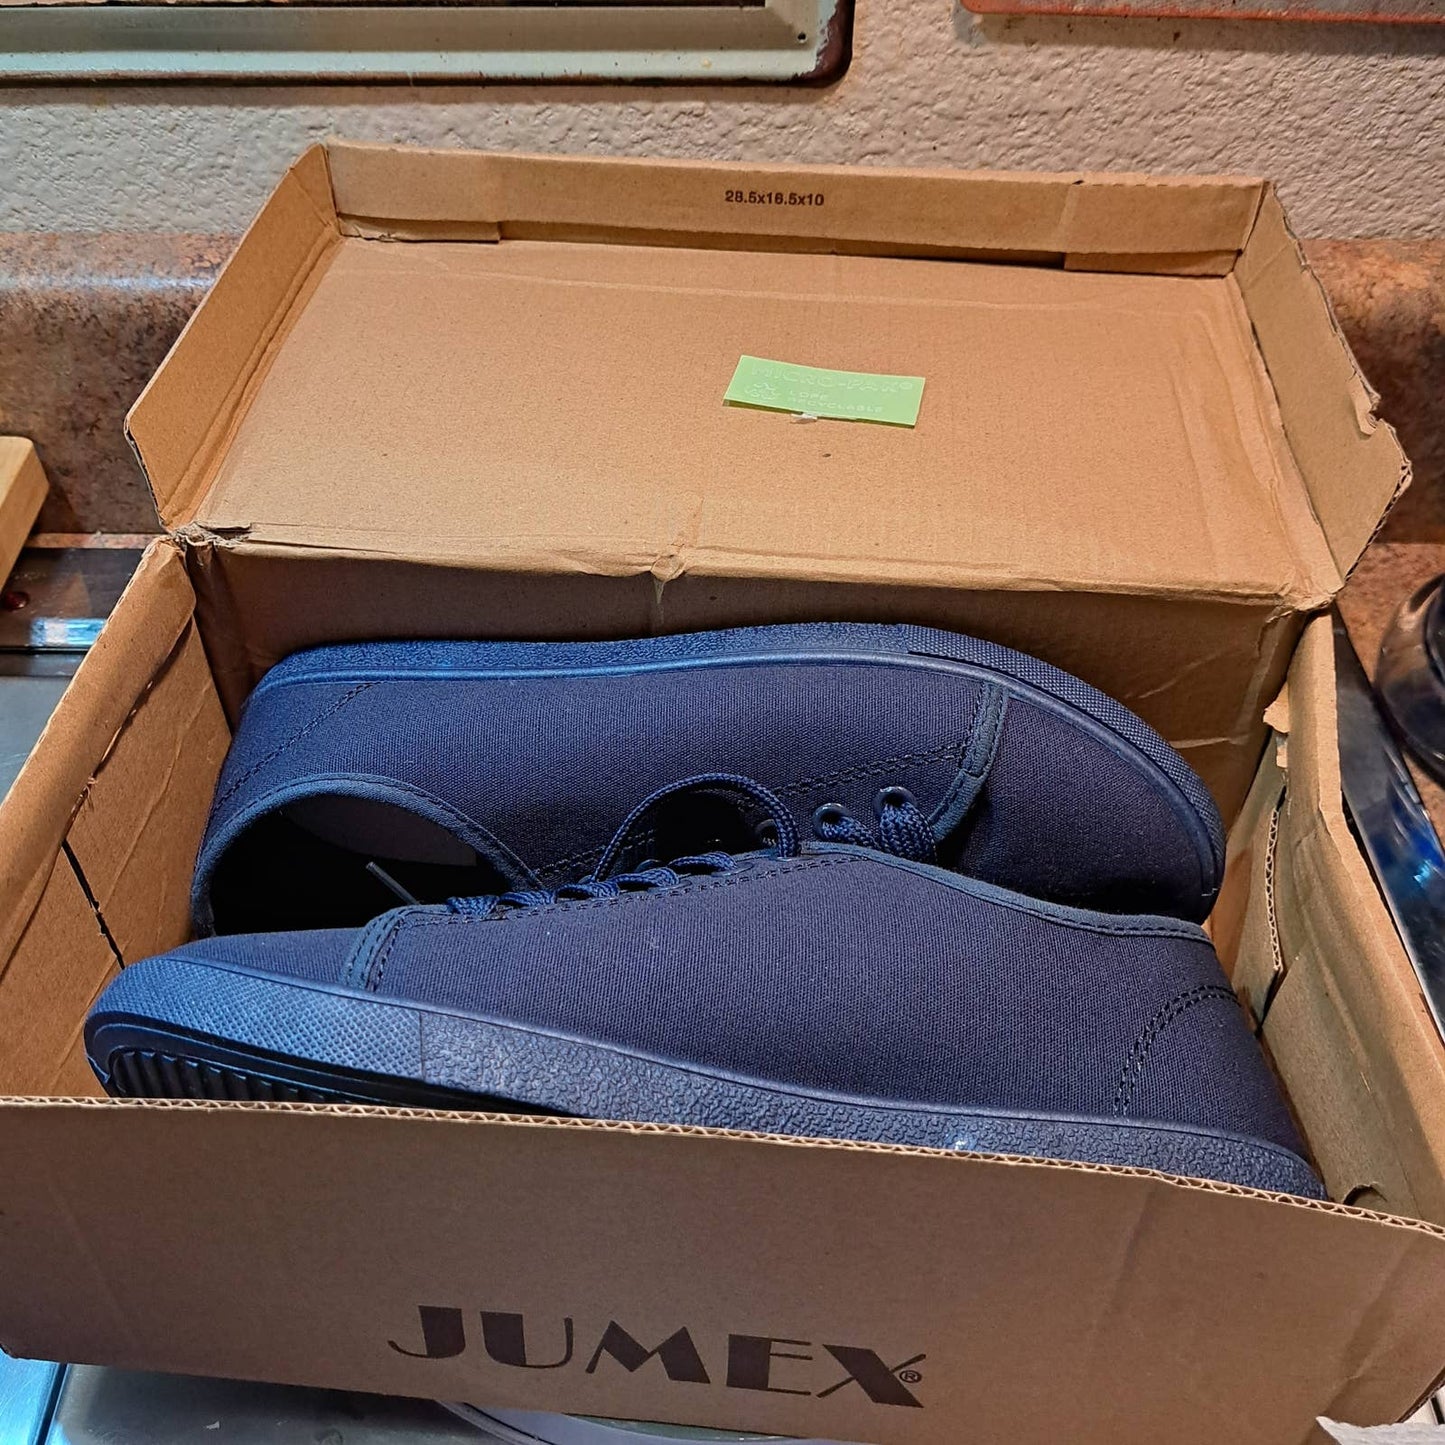 NIB - JUMEX BLUE shoe and laces - EU 39 / 8 US